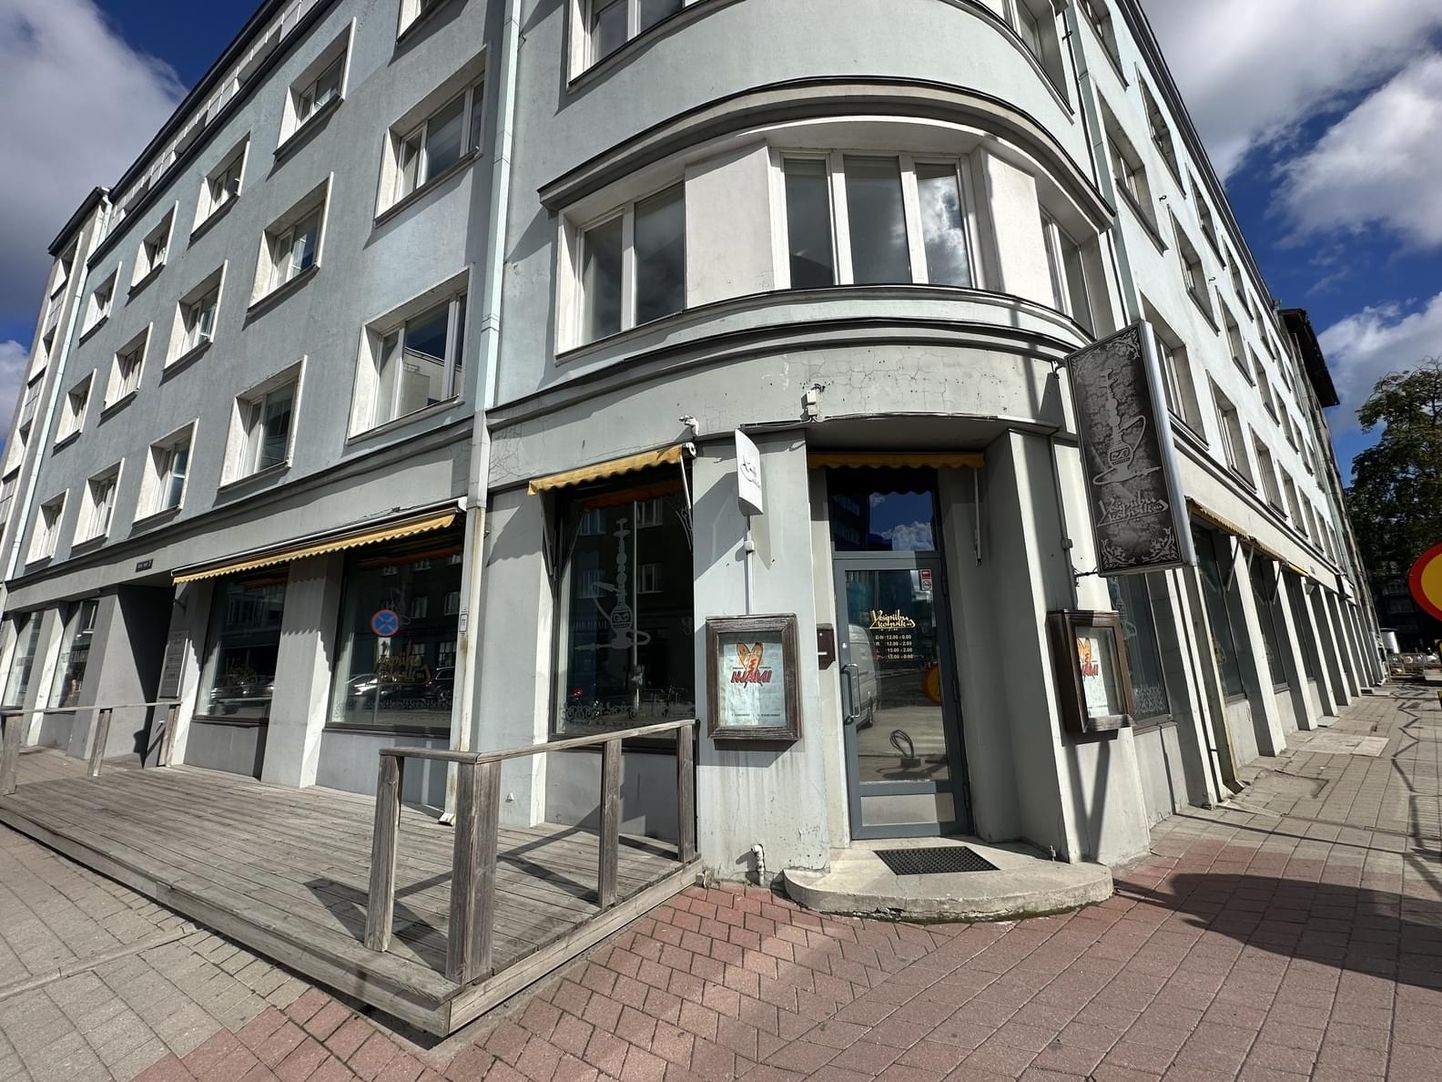 Kinnisvaraportaalis Kinnisvara24 müüki pandud kohvik-baar Tallinna kesklinnas.